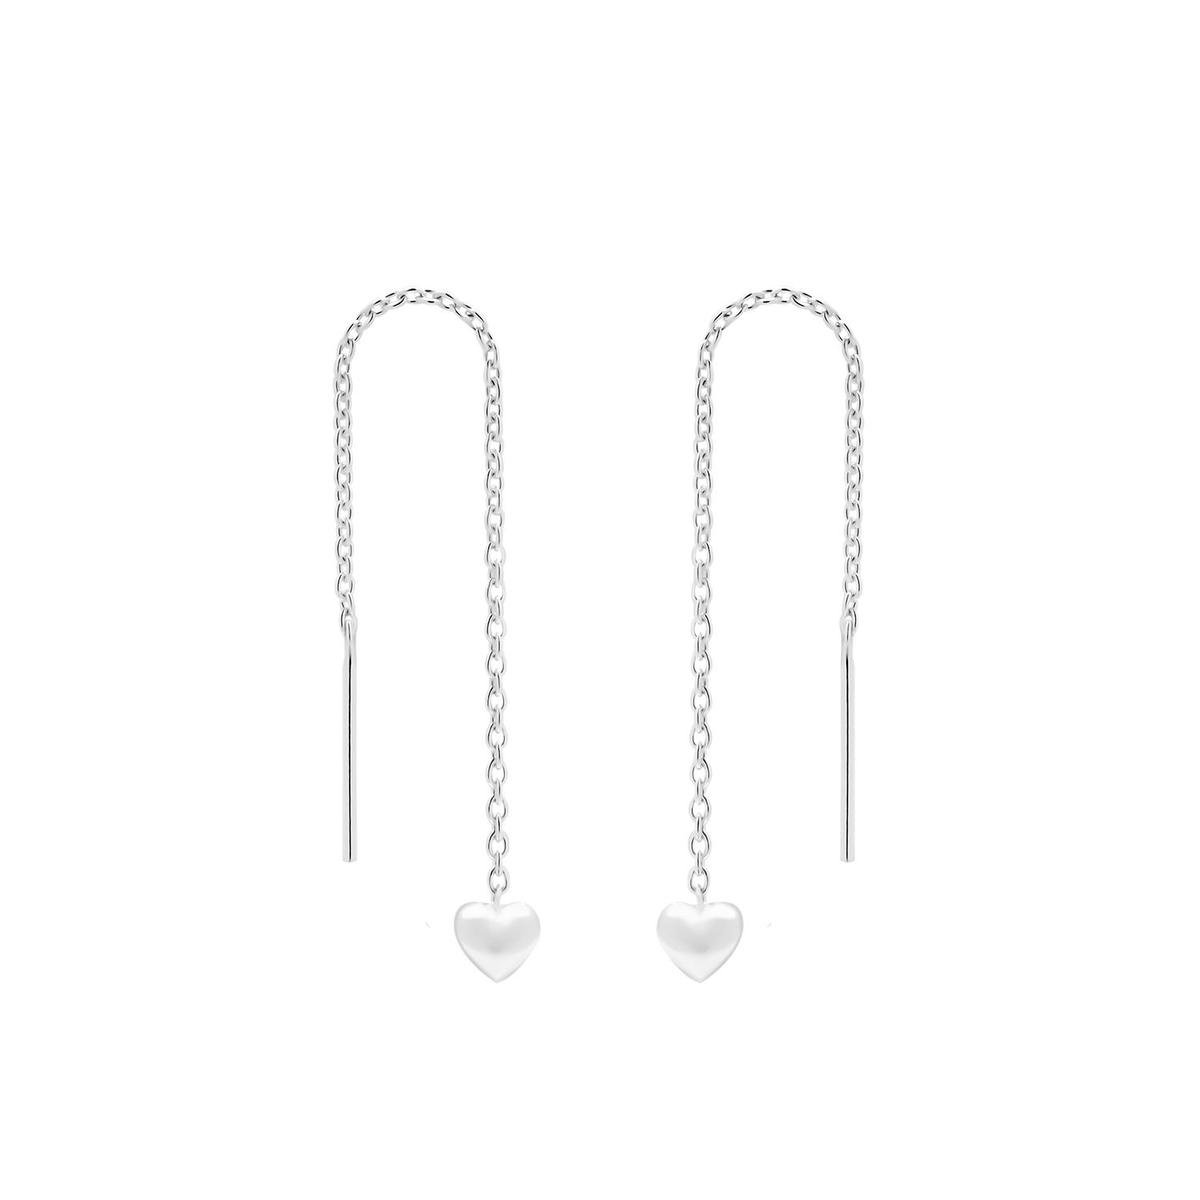 Oorbellen dames | Chain oorbellen | Zilveren chain oorbellen met hartje